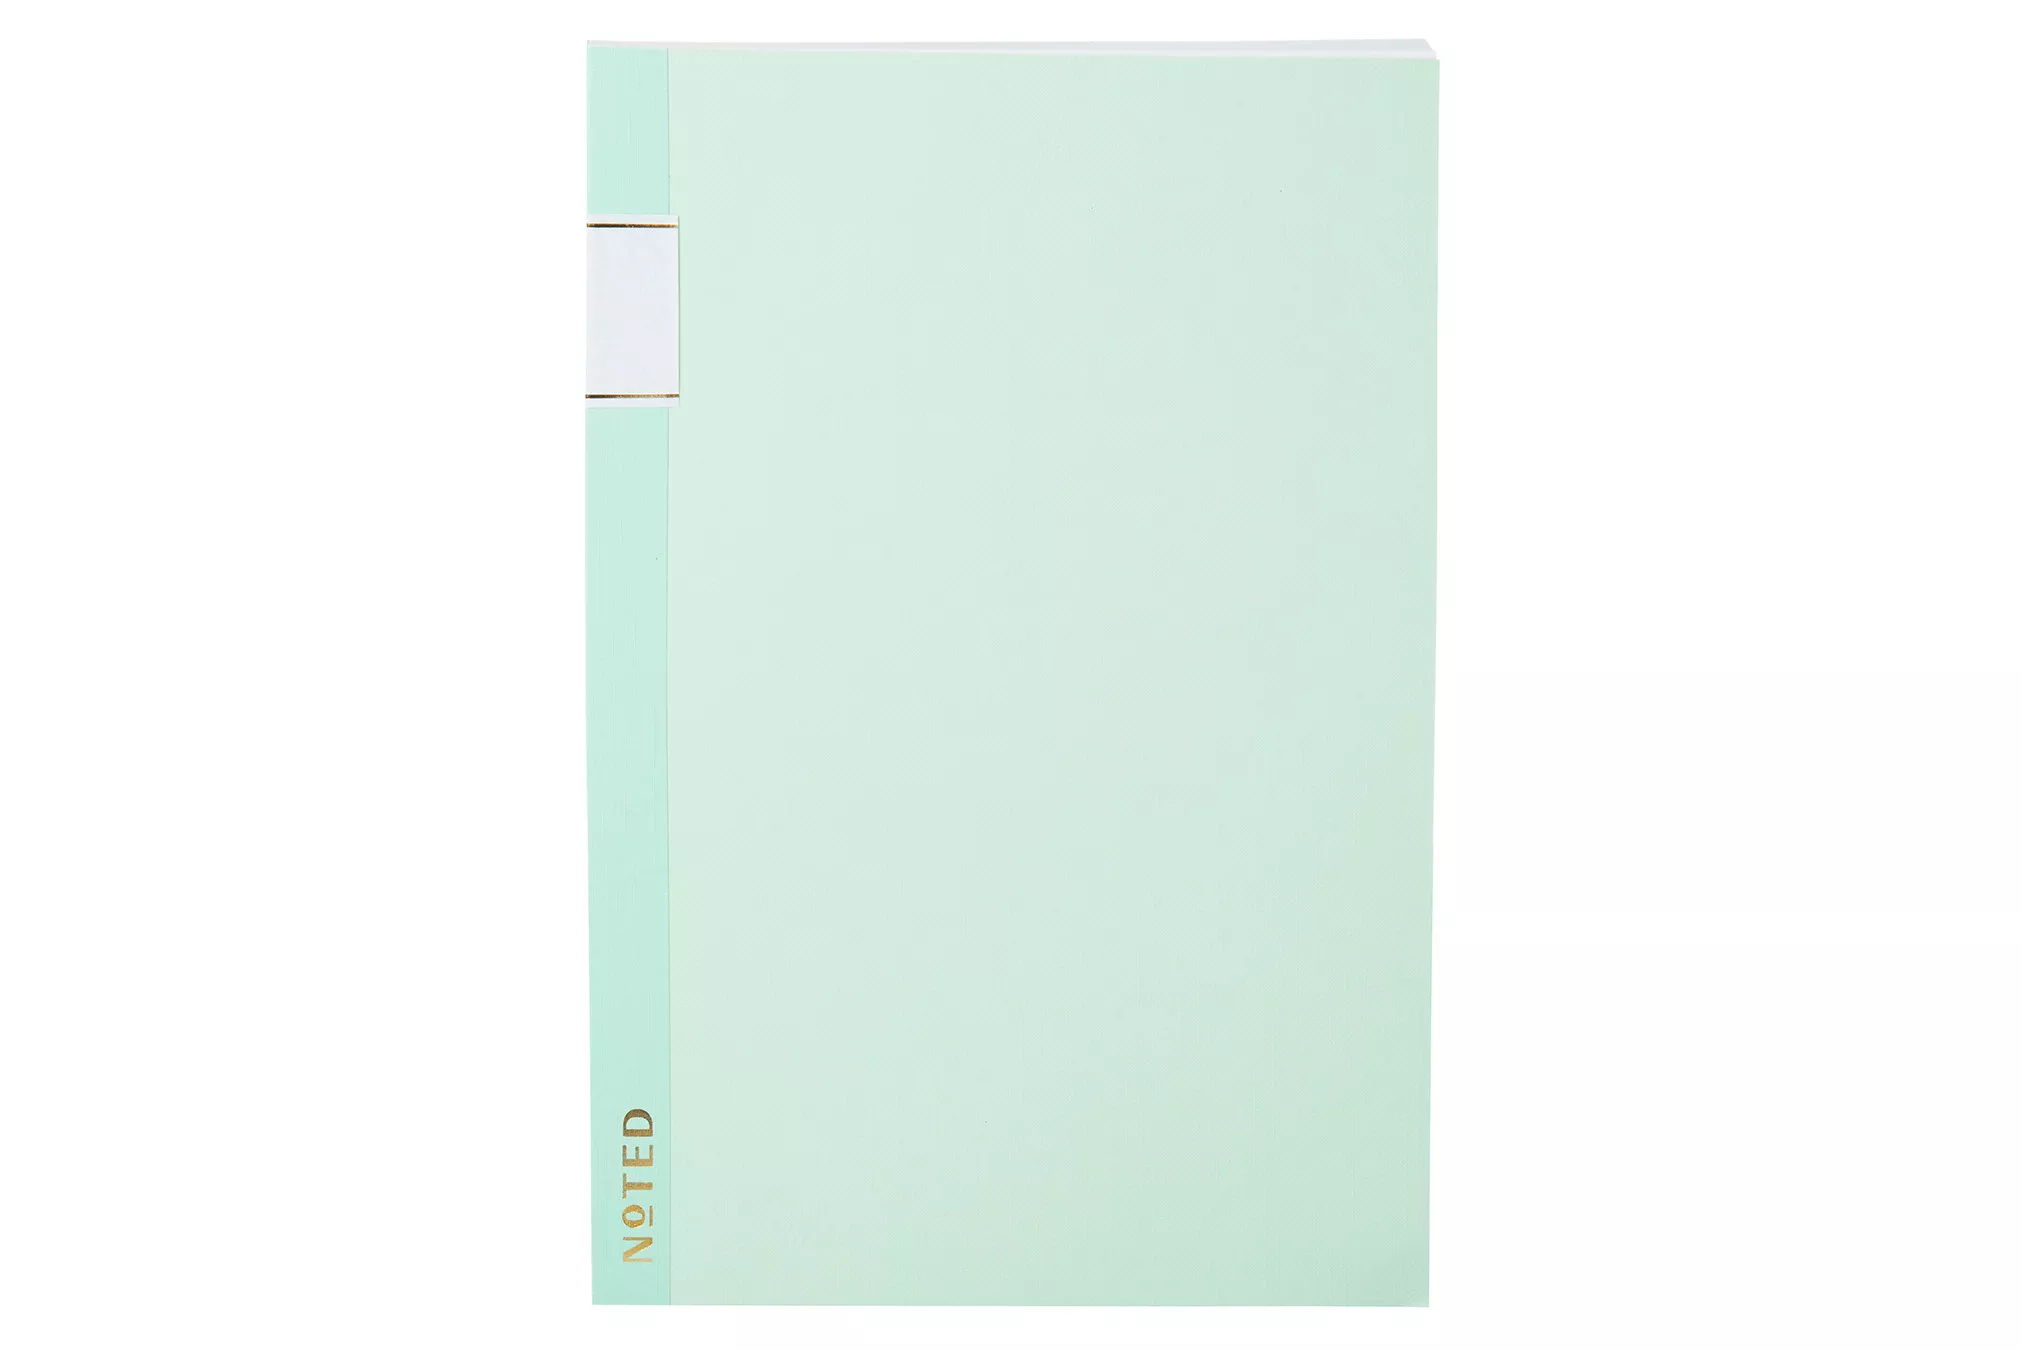 Post-it® Notebook NTD-N58-TT, 8.5 in x 5.75 in (215 mm x 146 mm)